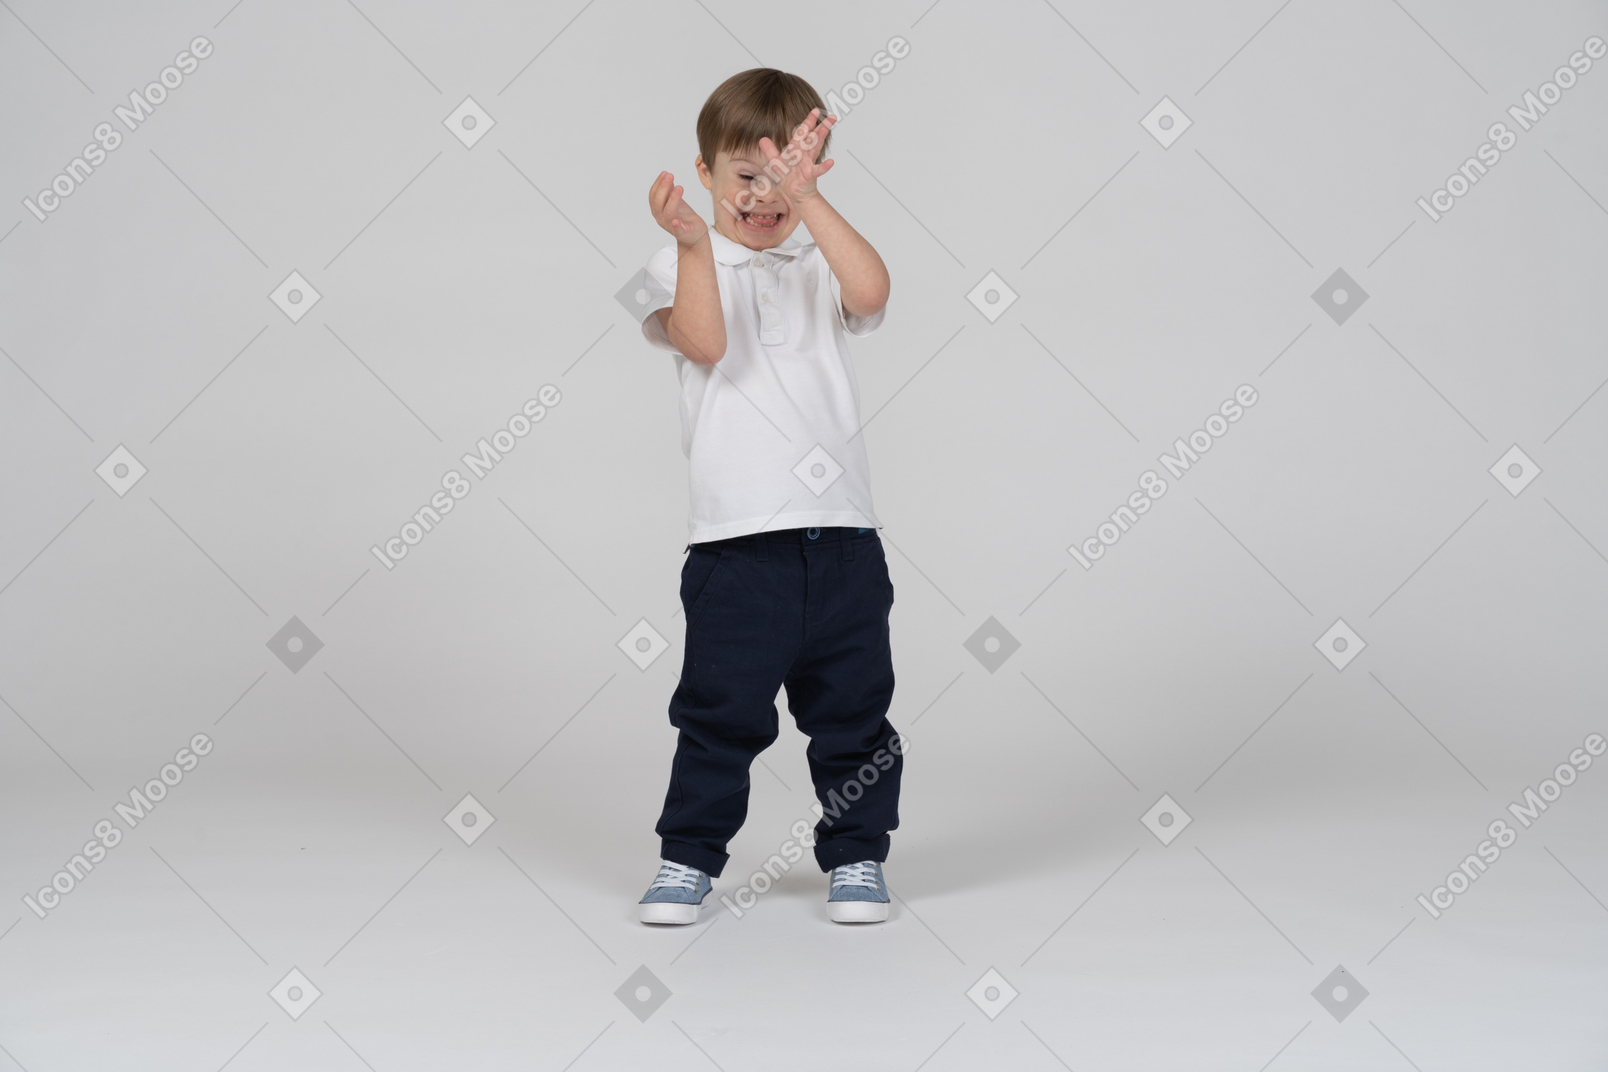 Vista frontal de un niño escondido detrás de sus manos con una sonrisa